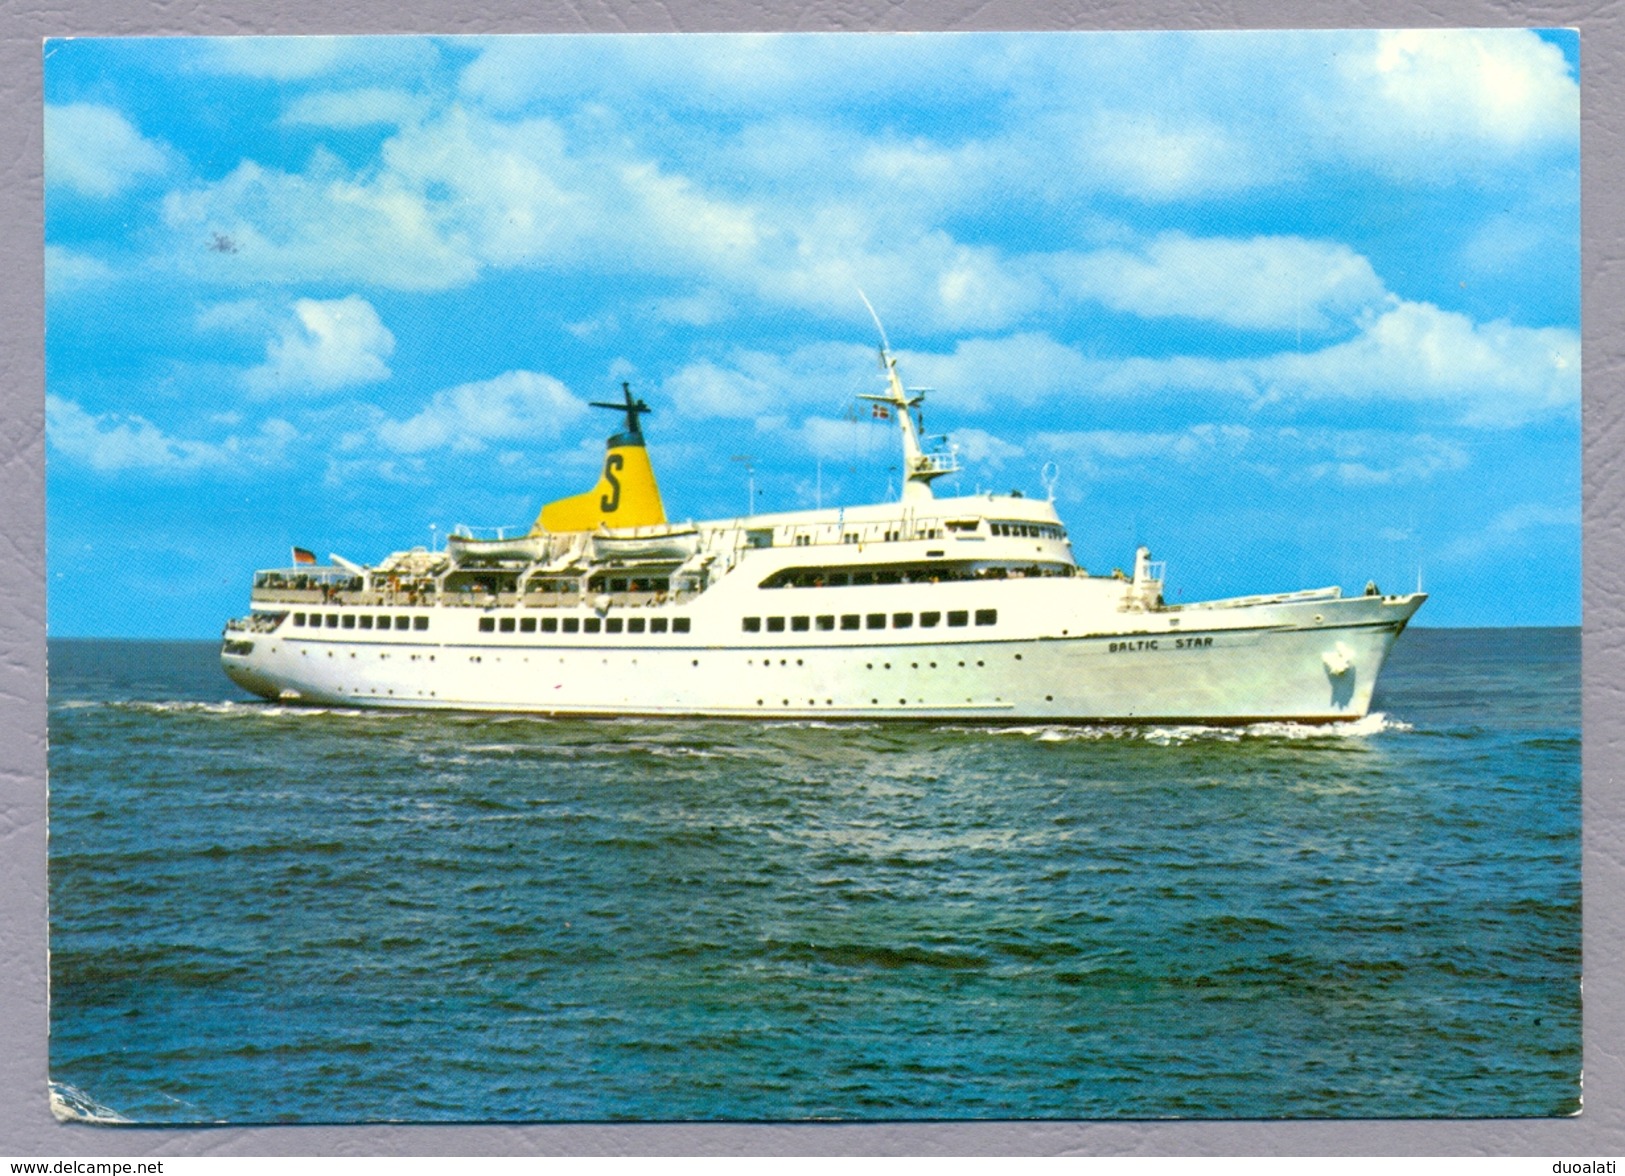 Germany, Deutschland, 7 Postcards, 1970 - ties MS Baltic Star Seetouristik ship Oldenburg in Holstein